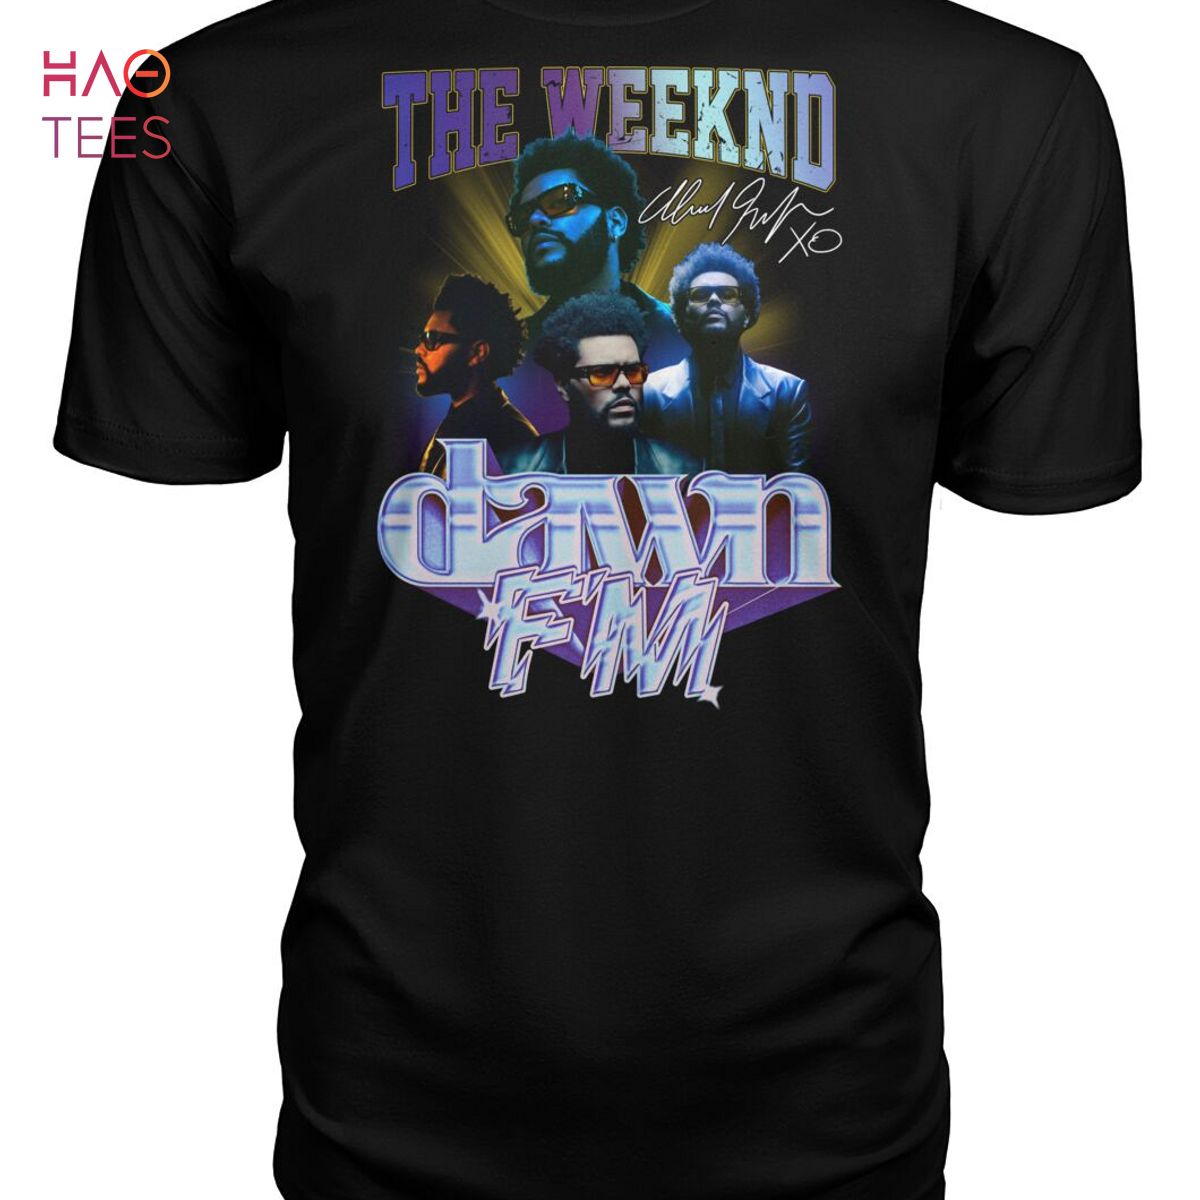 The Weeknd Dawn Fm Shirt Limited Edition